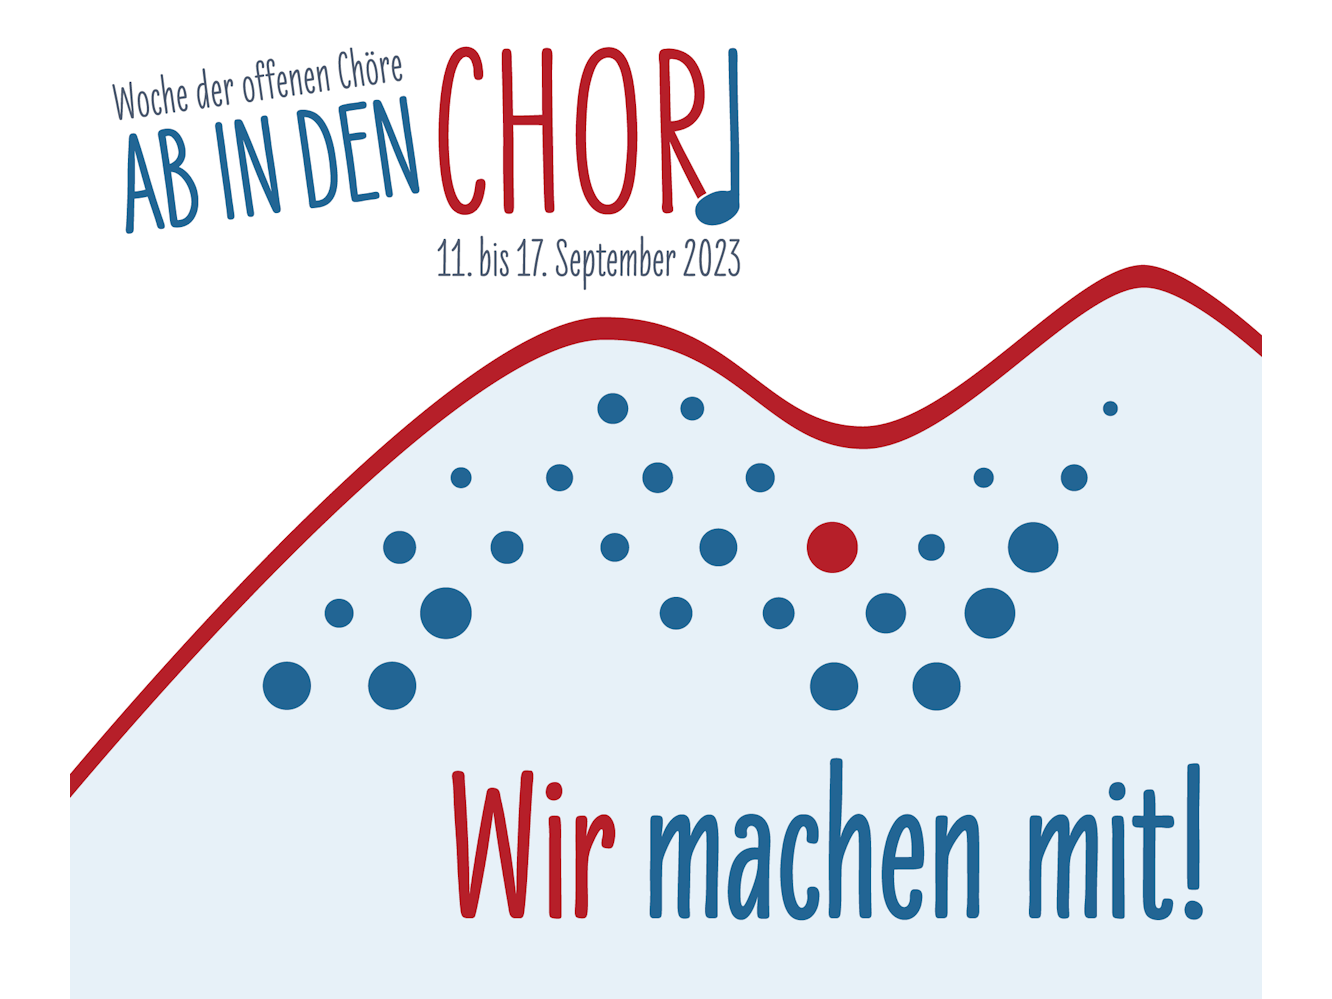 Ab in den Chor - Woche der offenen Chöre (c) Deutscher Chorverband